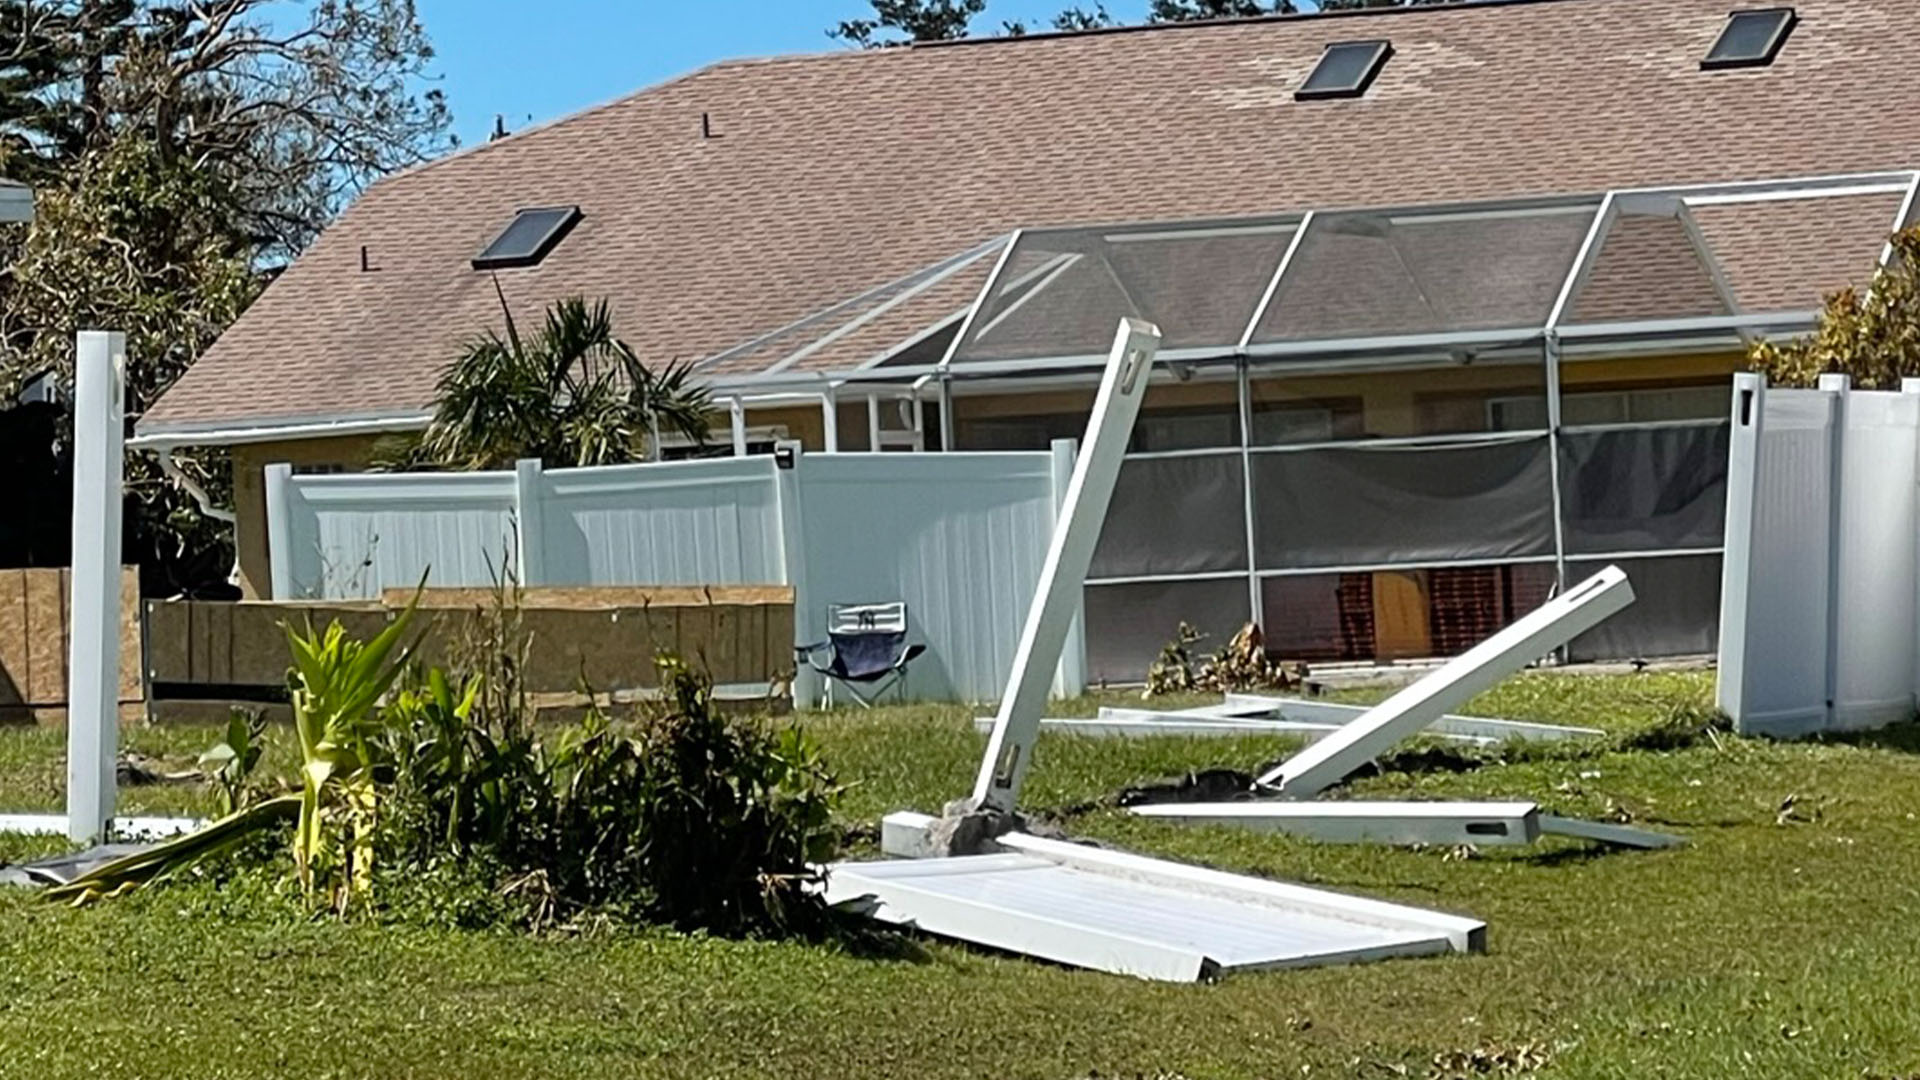 Hurricane Nicole property damage claims